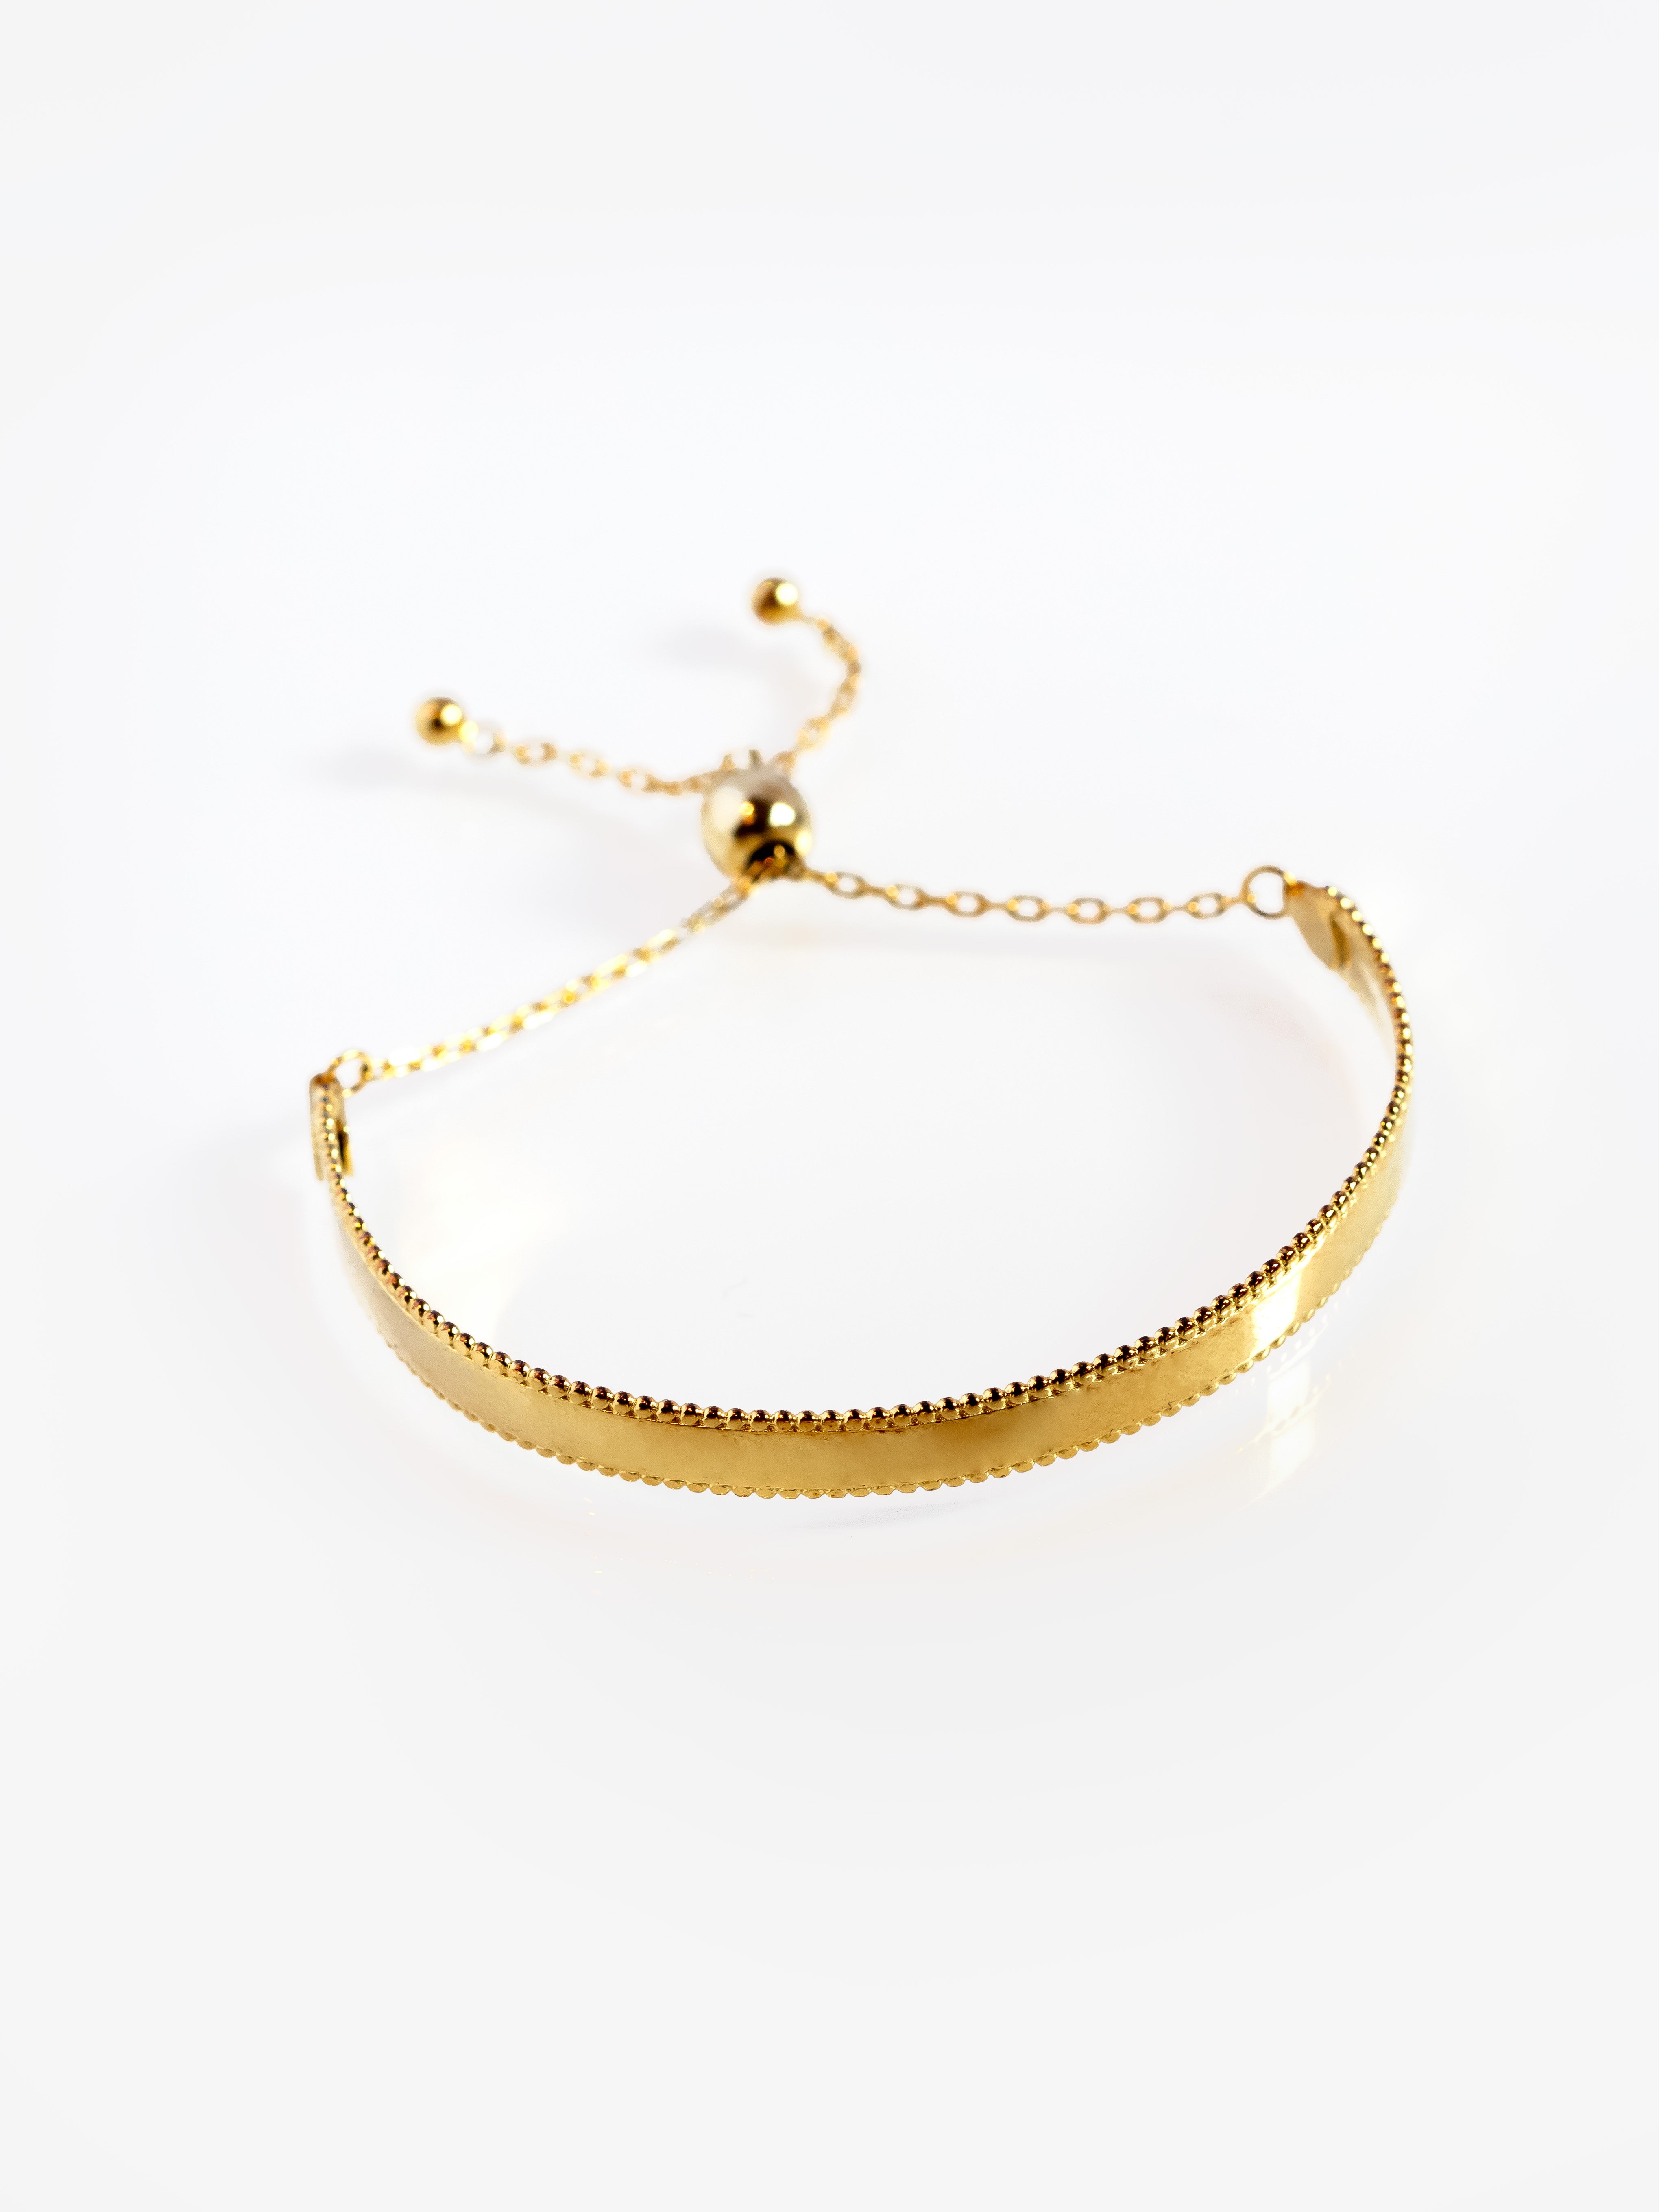 Gold Bangle Bracelet - Adjustable Slider Chain